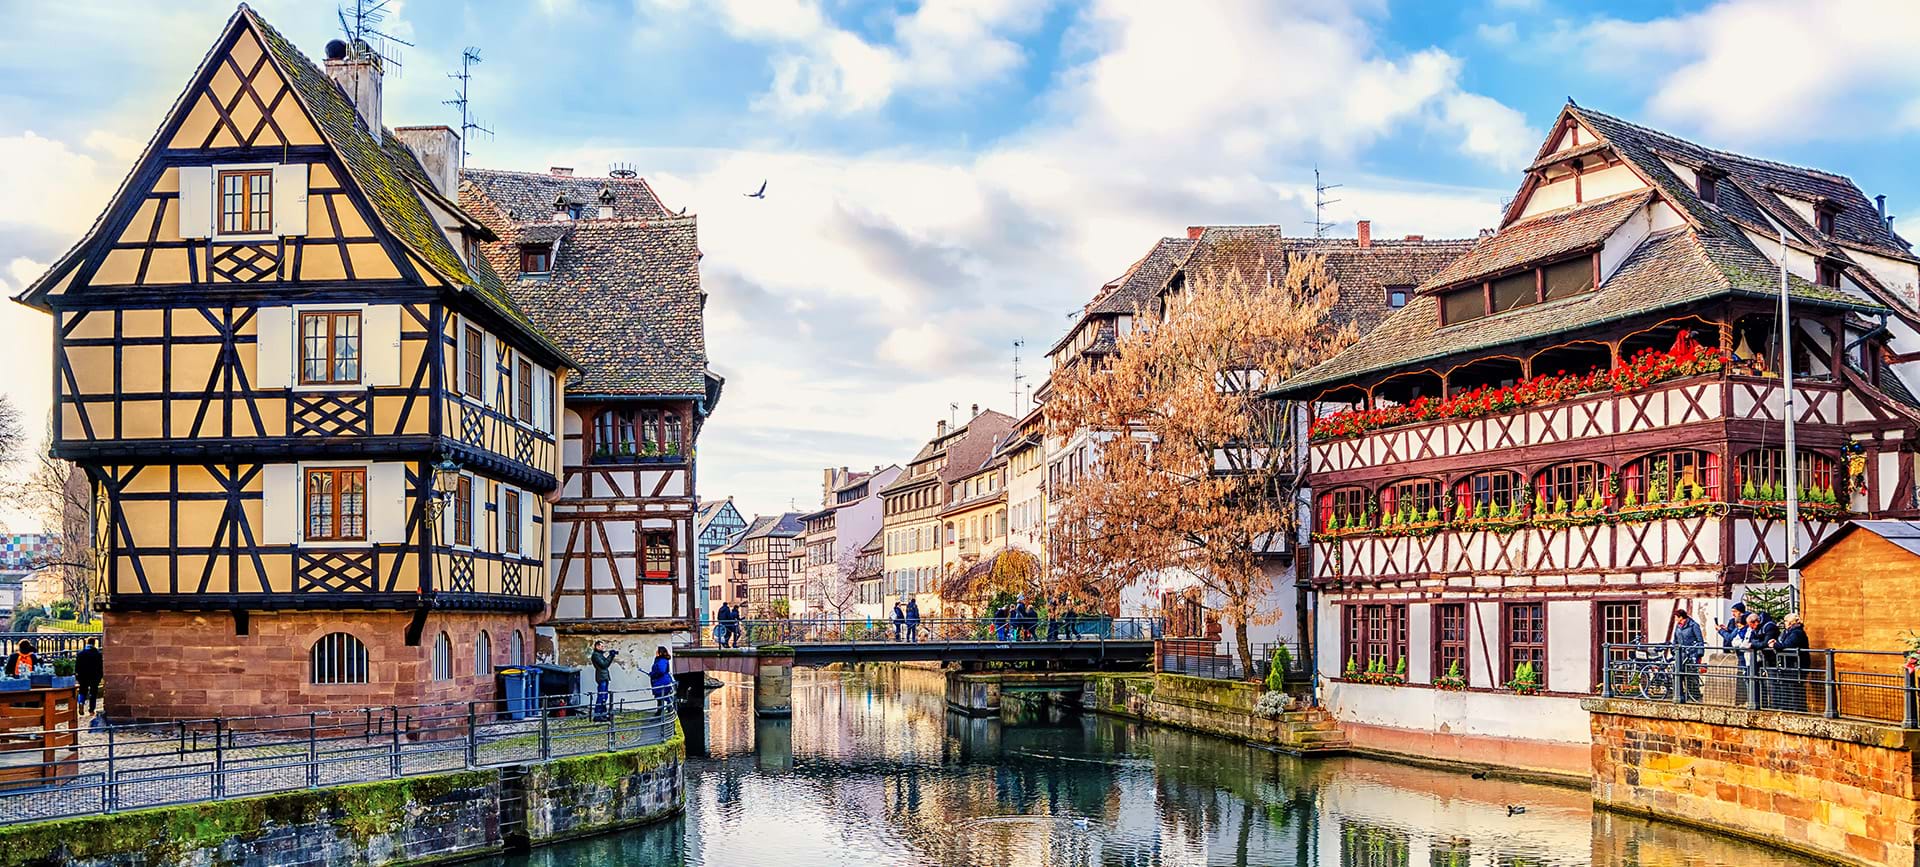 Quartier de la Petite France du centre historique de Strasbourg en Alsace